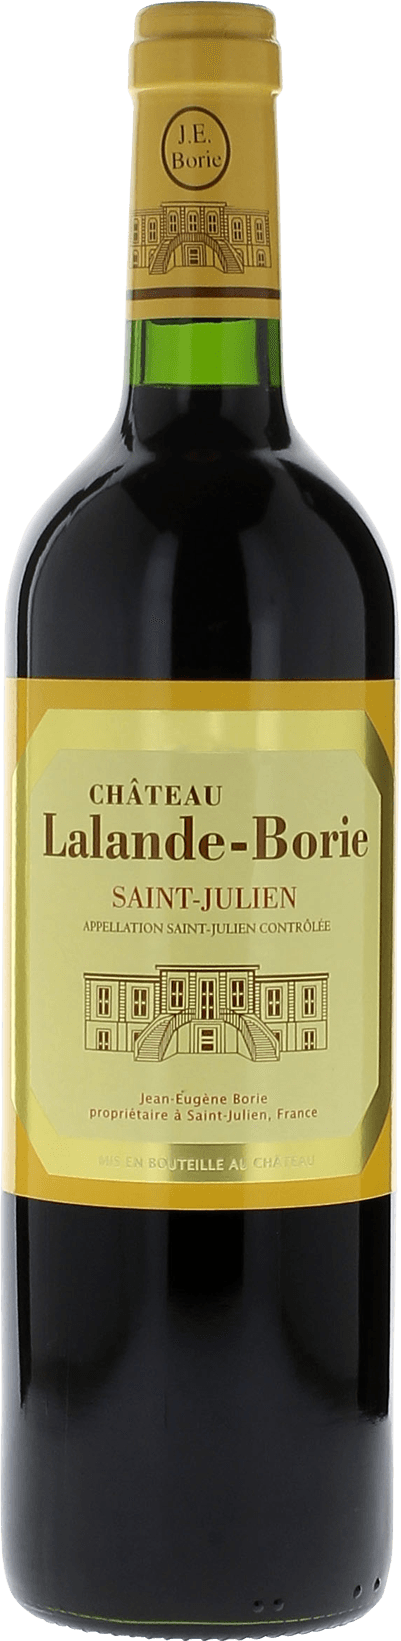 Lalande borie 2000  Saint-Julien, Bordeaux rouge